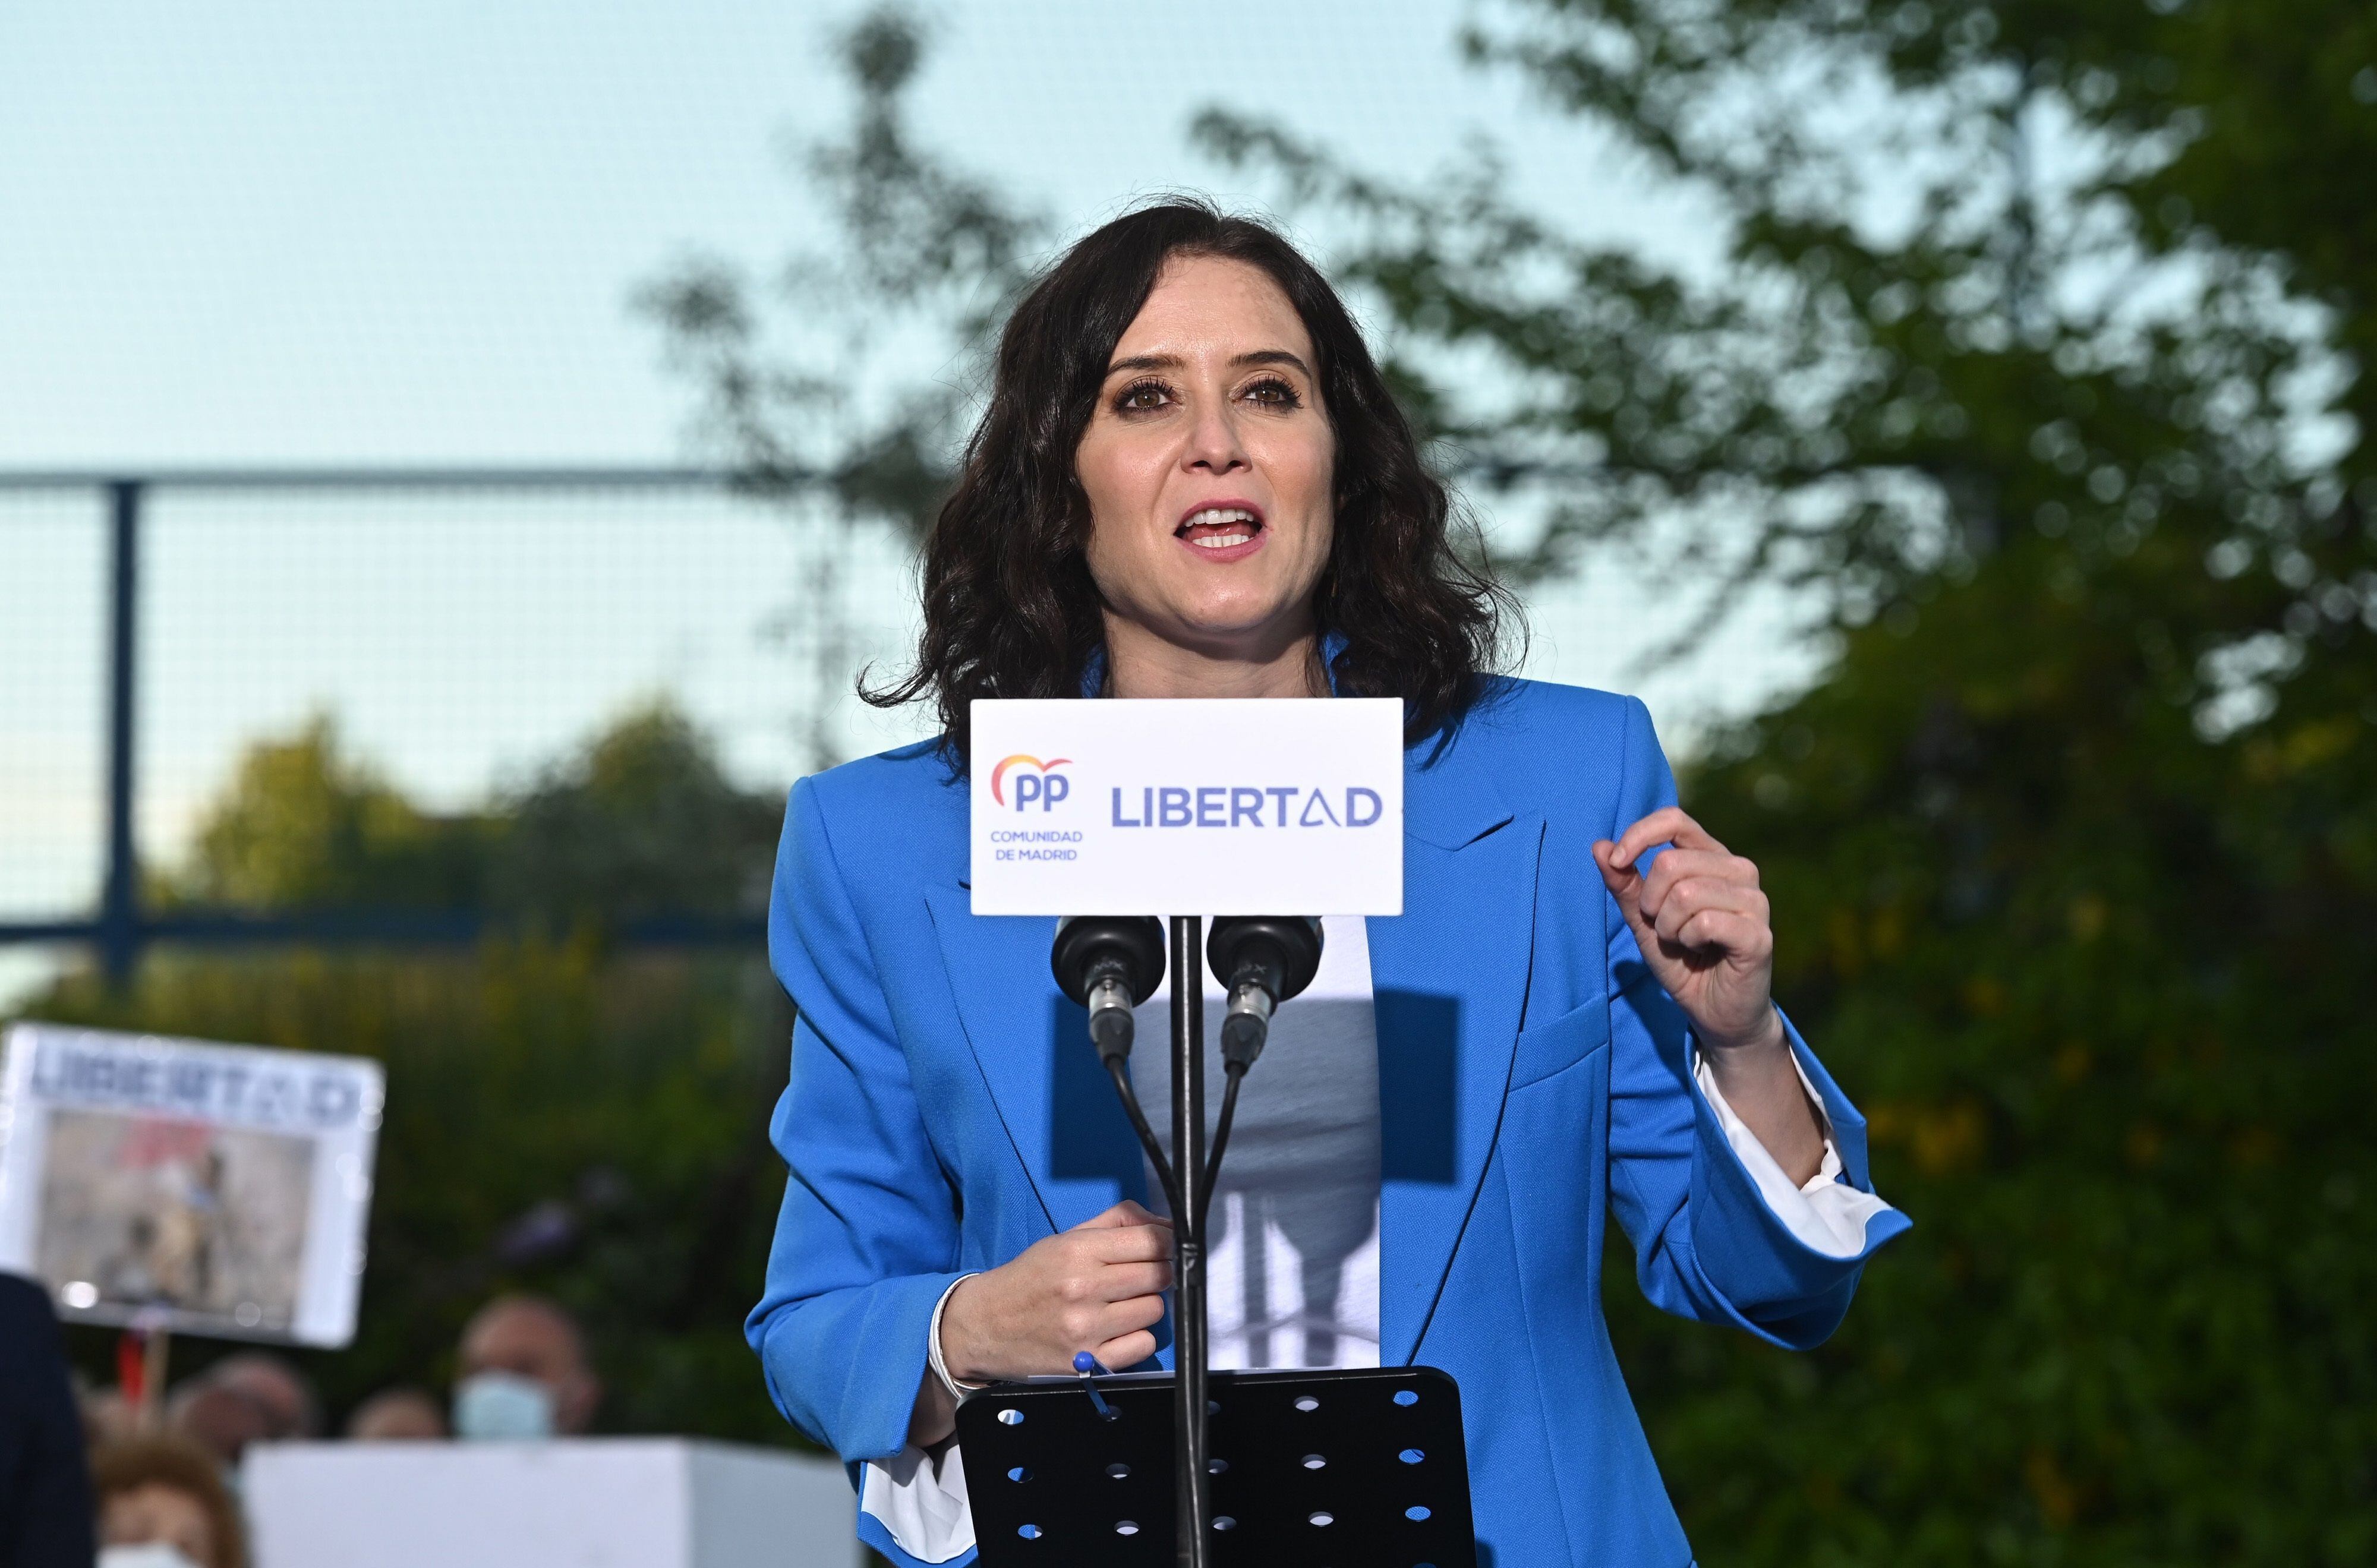 La candidata del PP a la presidencia de la Comunidad de Madrid, Isabel Díaz Ayuso, durante el acto de campaña celebrado el pasado 29 de abril en Pinto (Madrid).